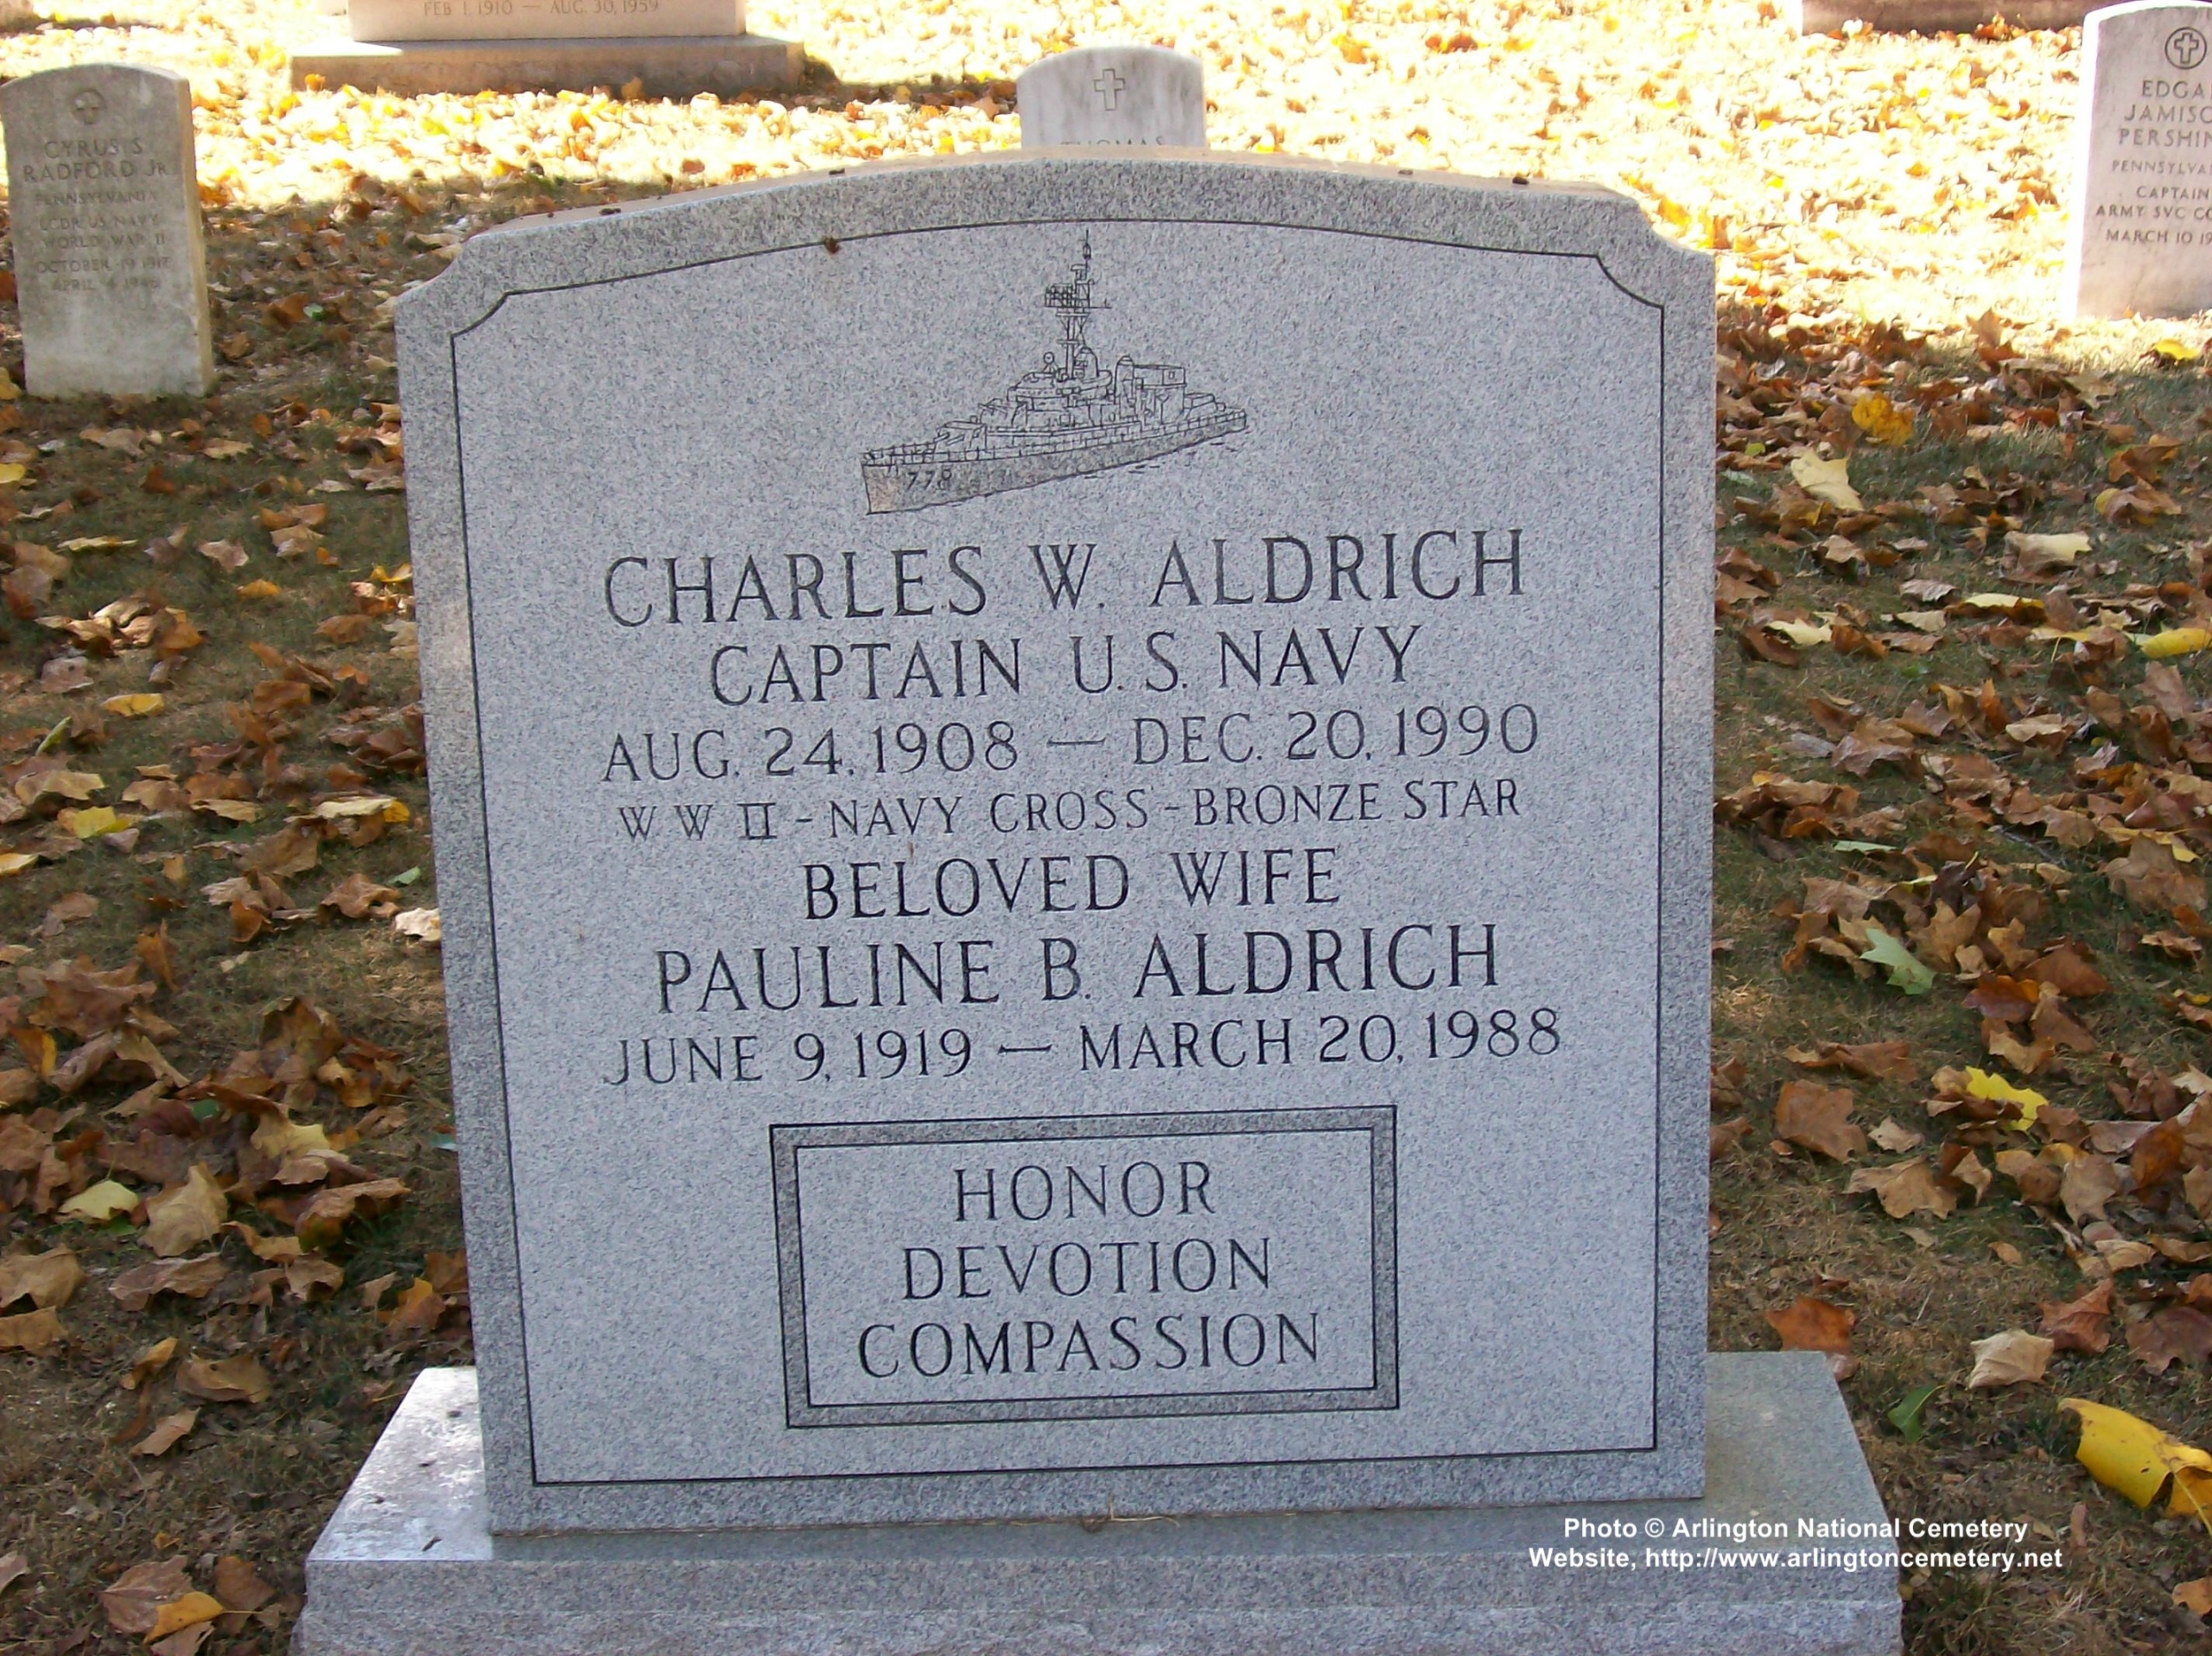 cwaldrich-gravesite-photo-october-2007-001